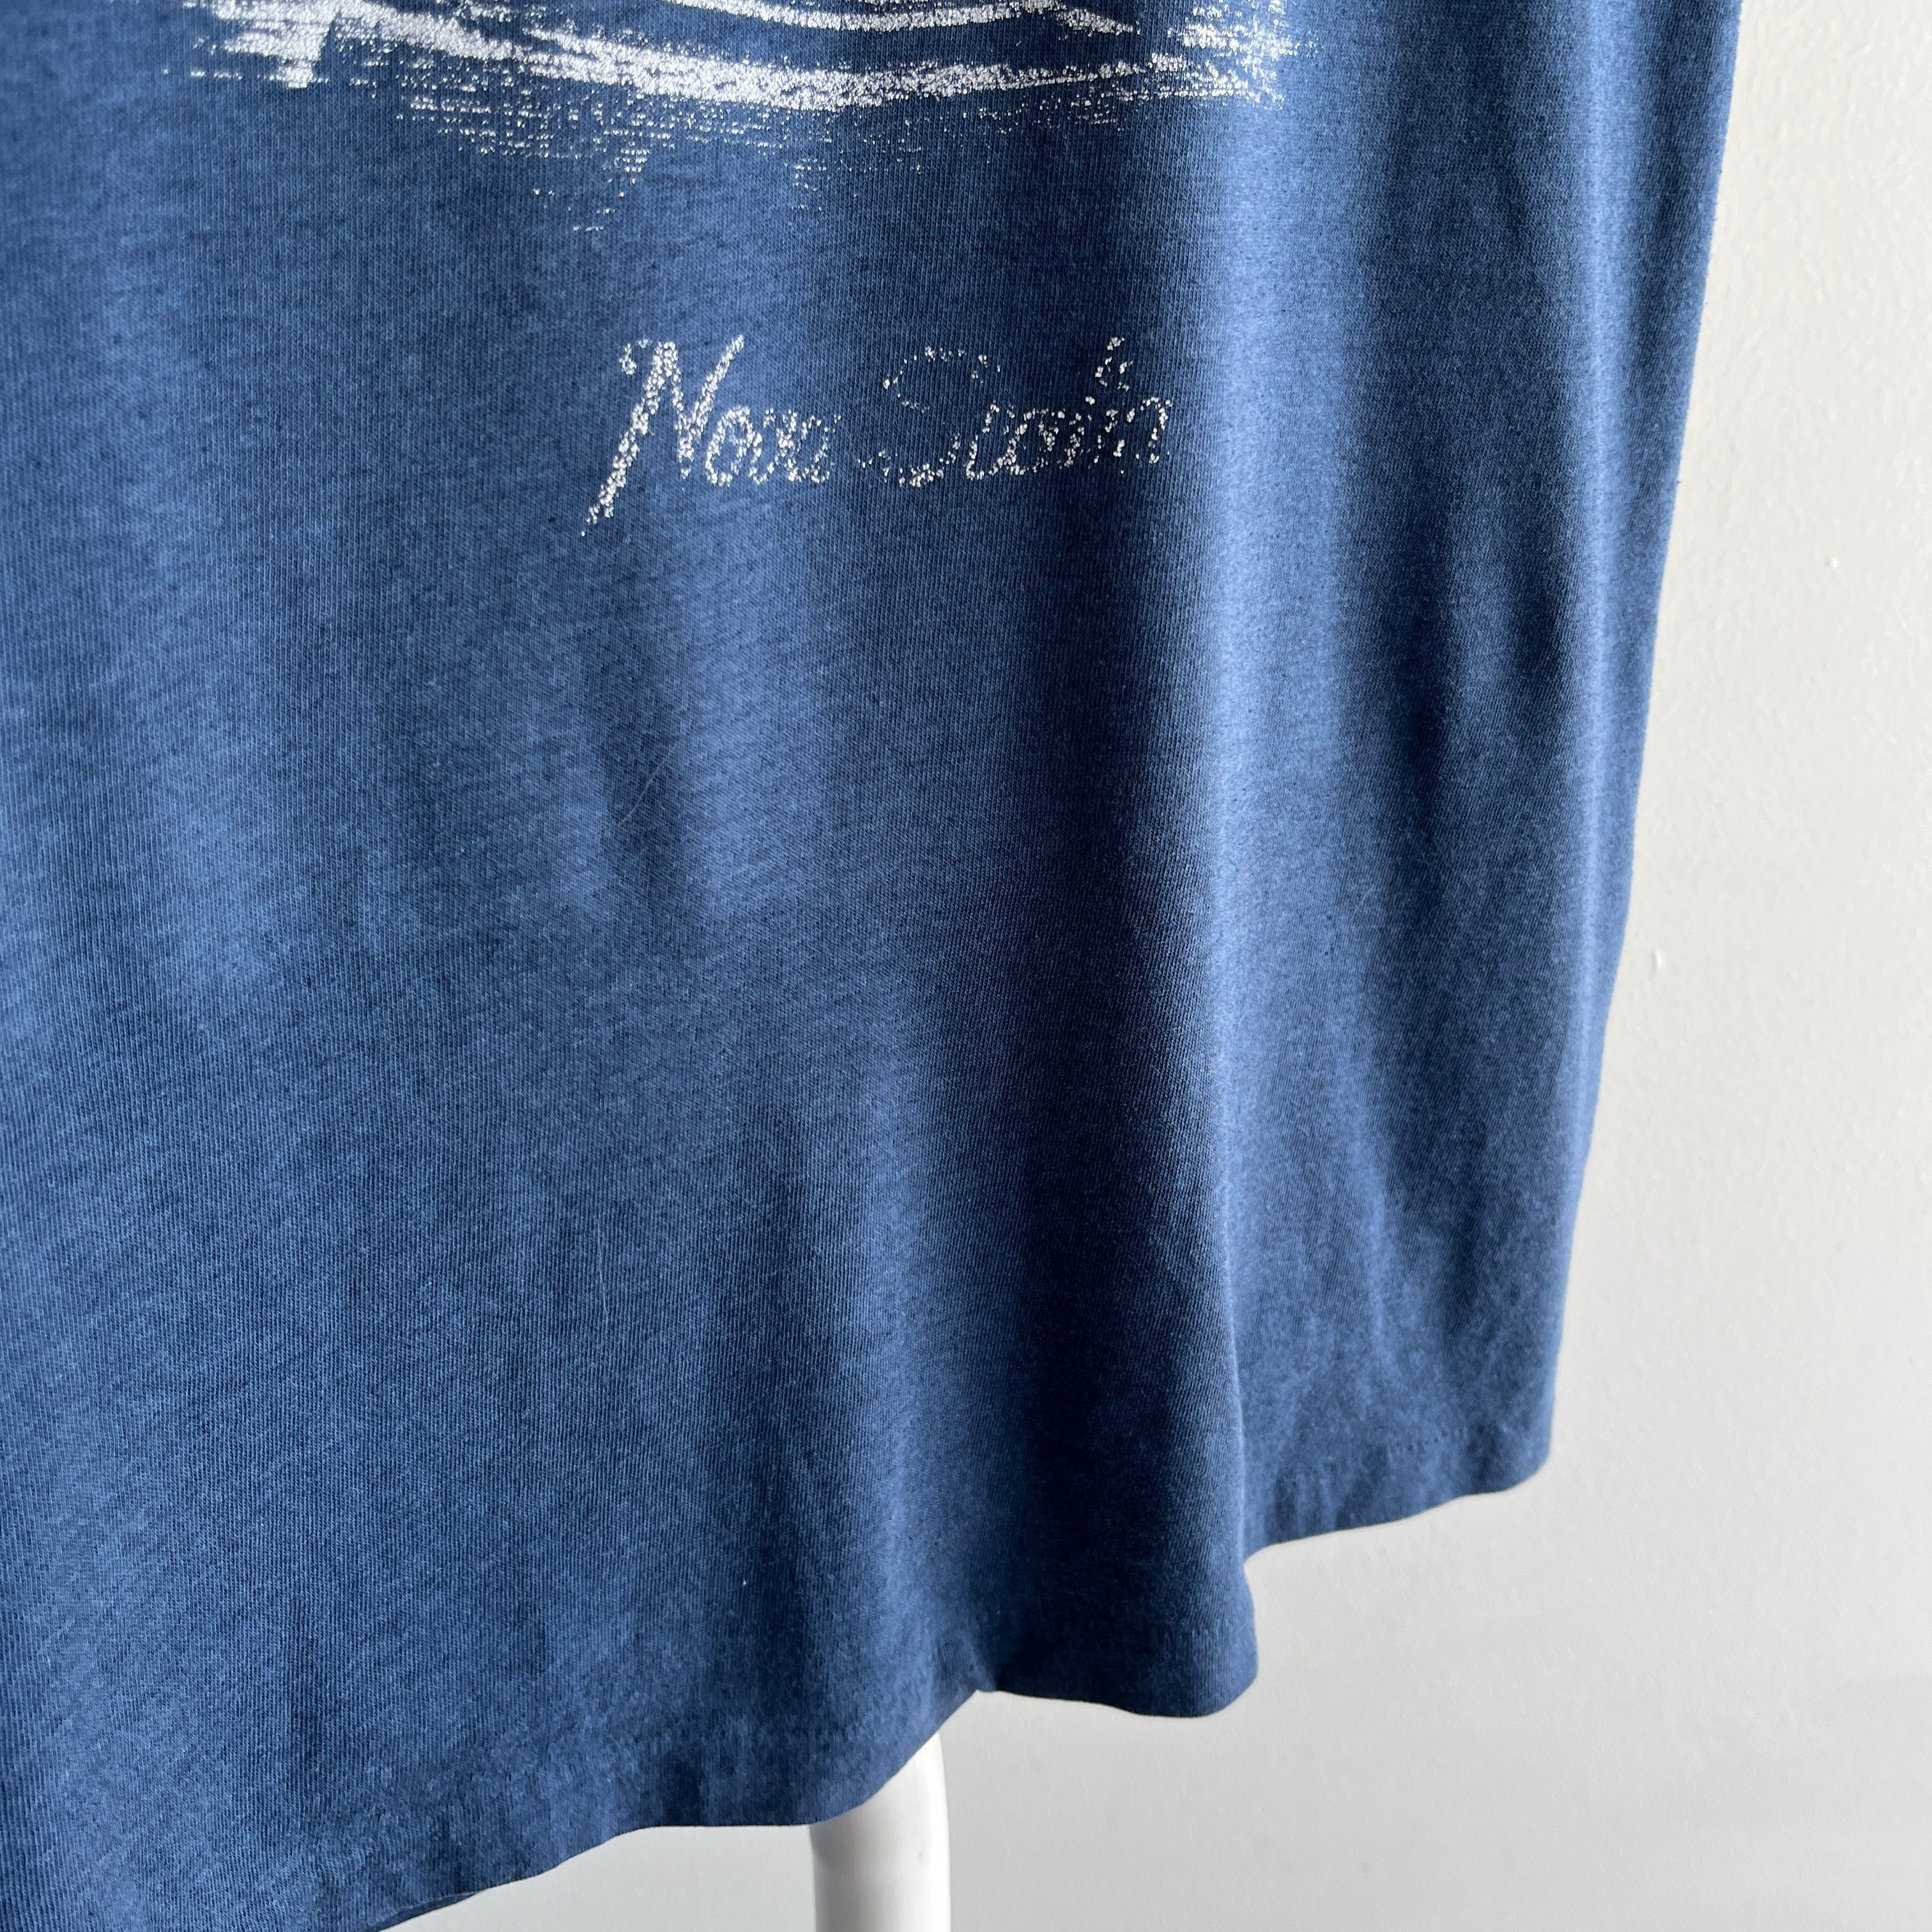 1970/80s Nova Scotia Tourist T-Shirt